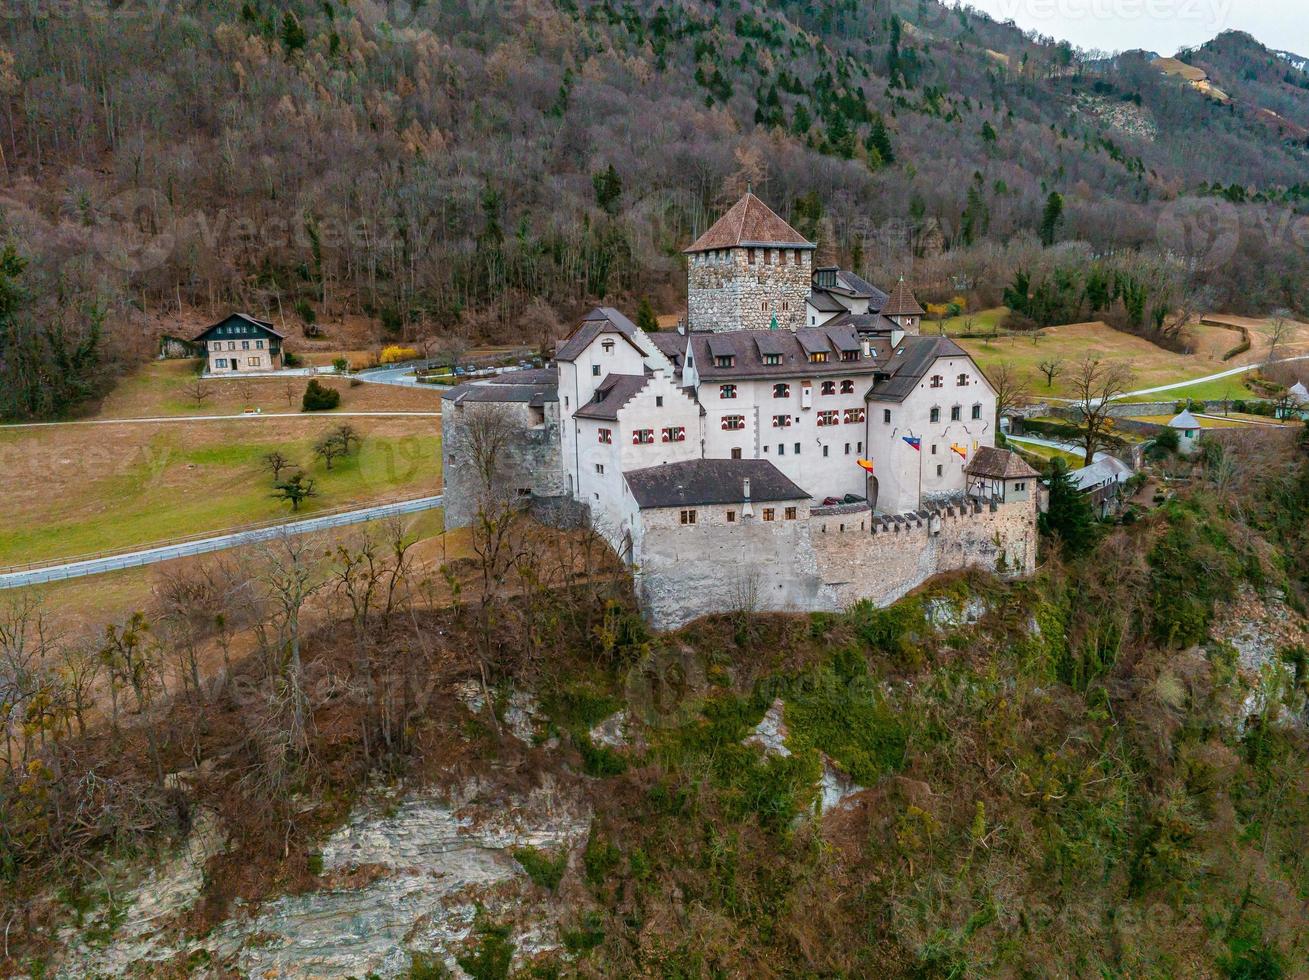 Luftaufnahme von Vaduz, der Hauptstadt von Liechtenstein foto